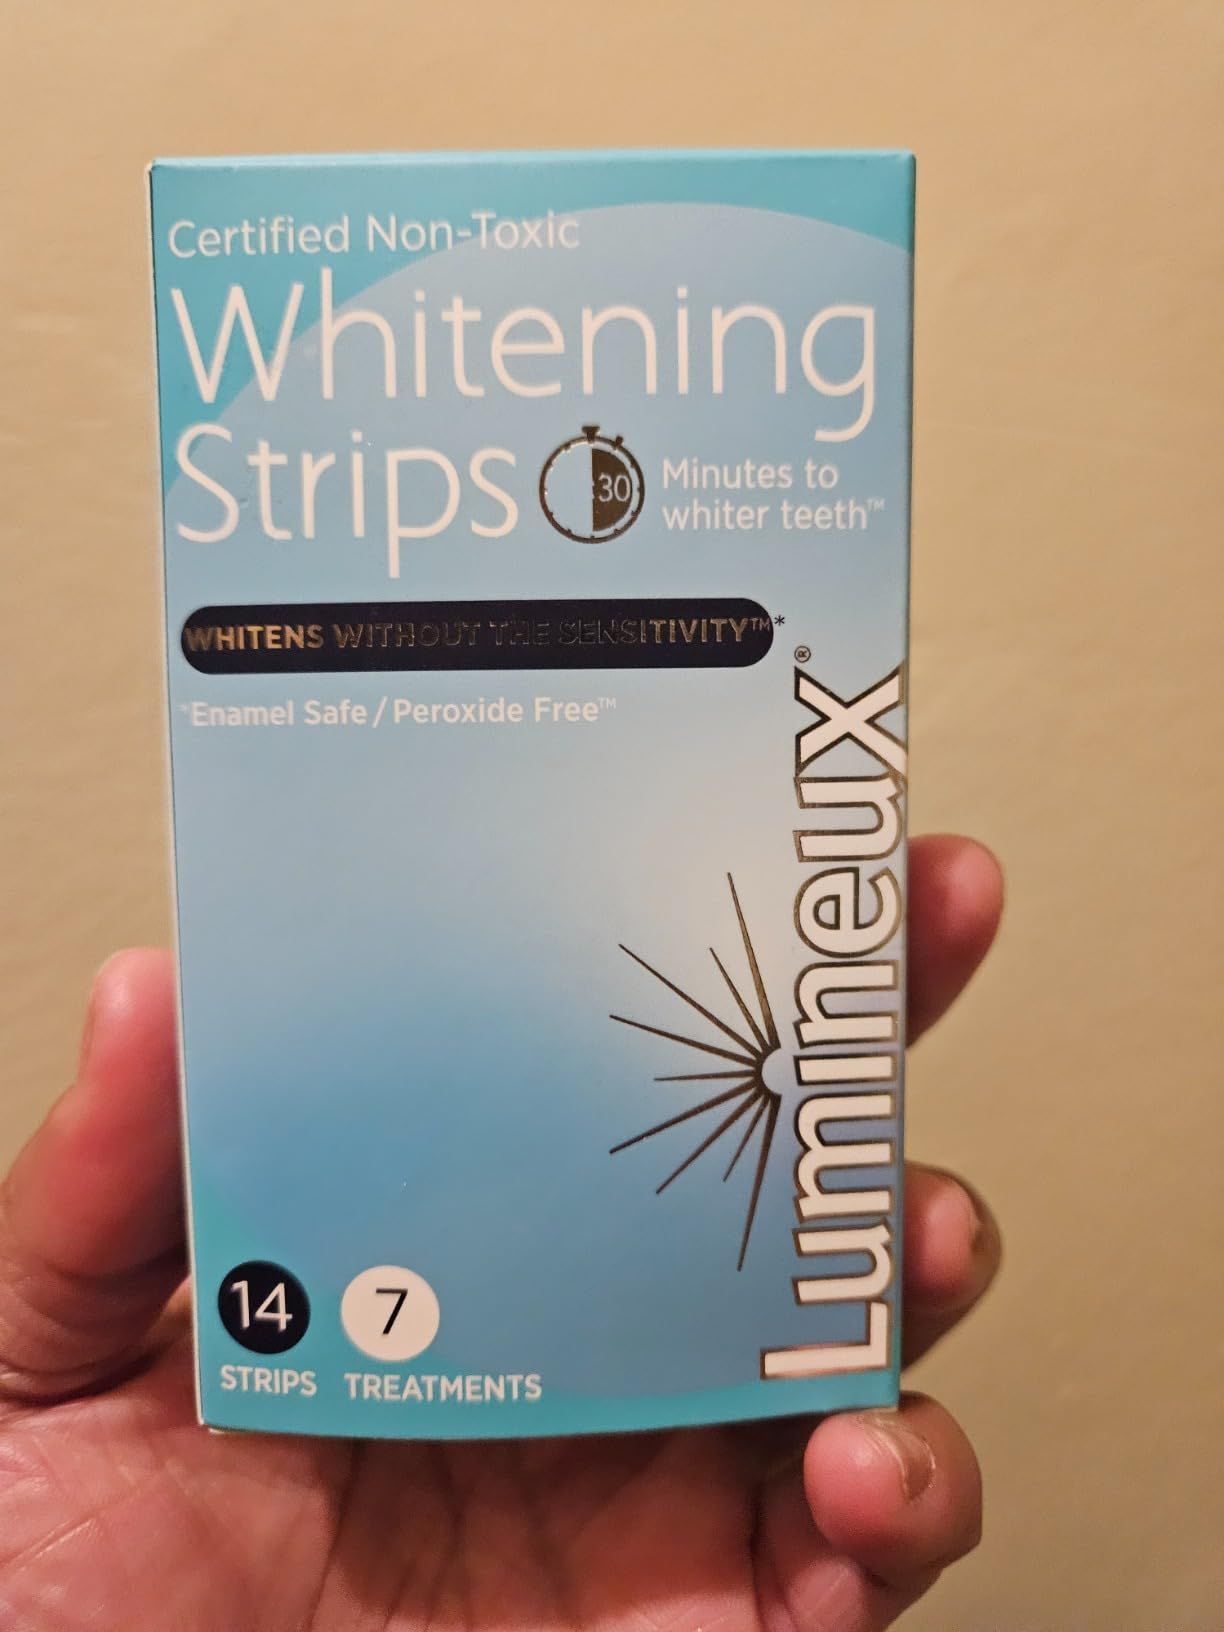 Lumineux Teeth Whitening Strips 7 Treatments - Enamel Safe - Whitening Without The Sensitivity - ... | Amazon (US)